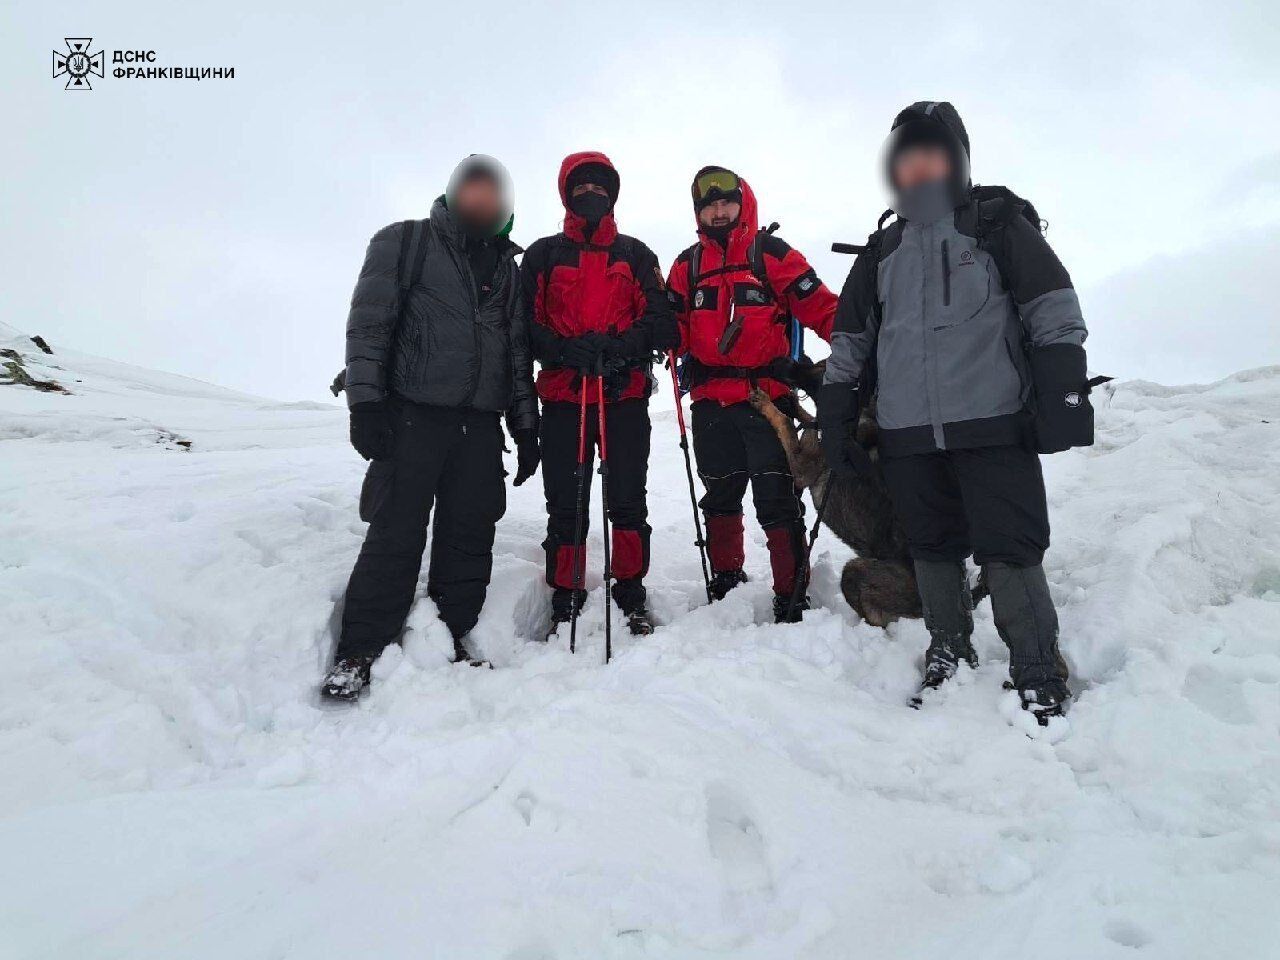 Втратили орієнтир: у засніжених Карпатах врятували двох туристів, які заблукали через погіршення погоди. Фото